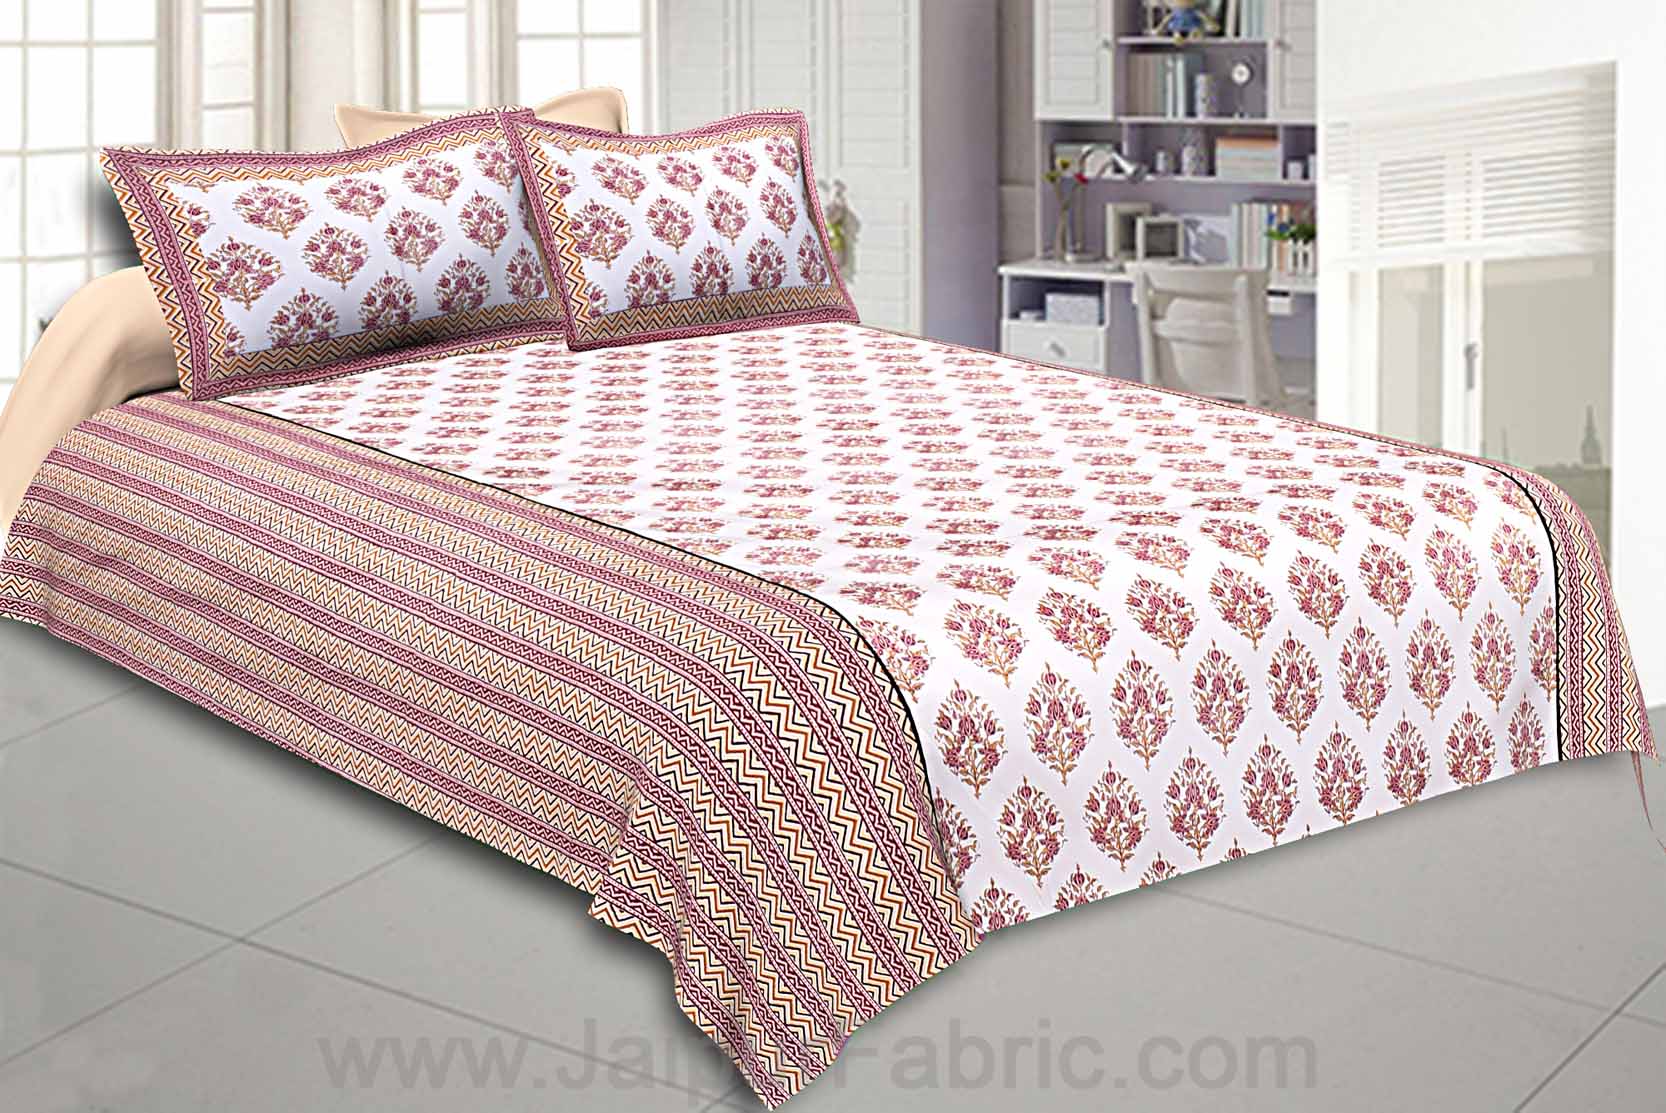 Double Bedsheet Dark Pink Bouquet Design